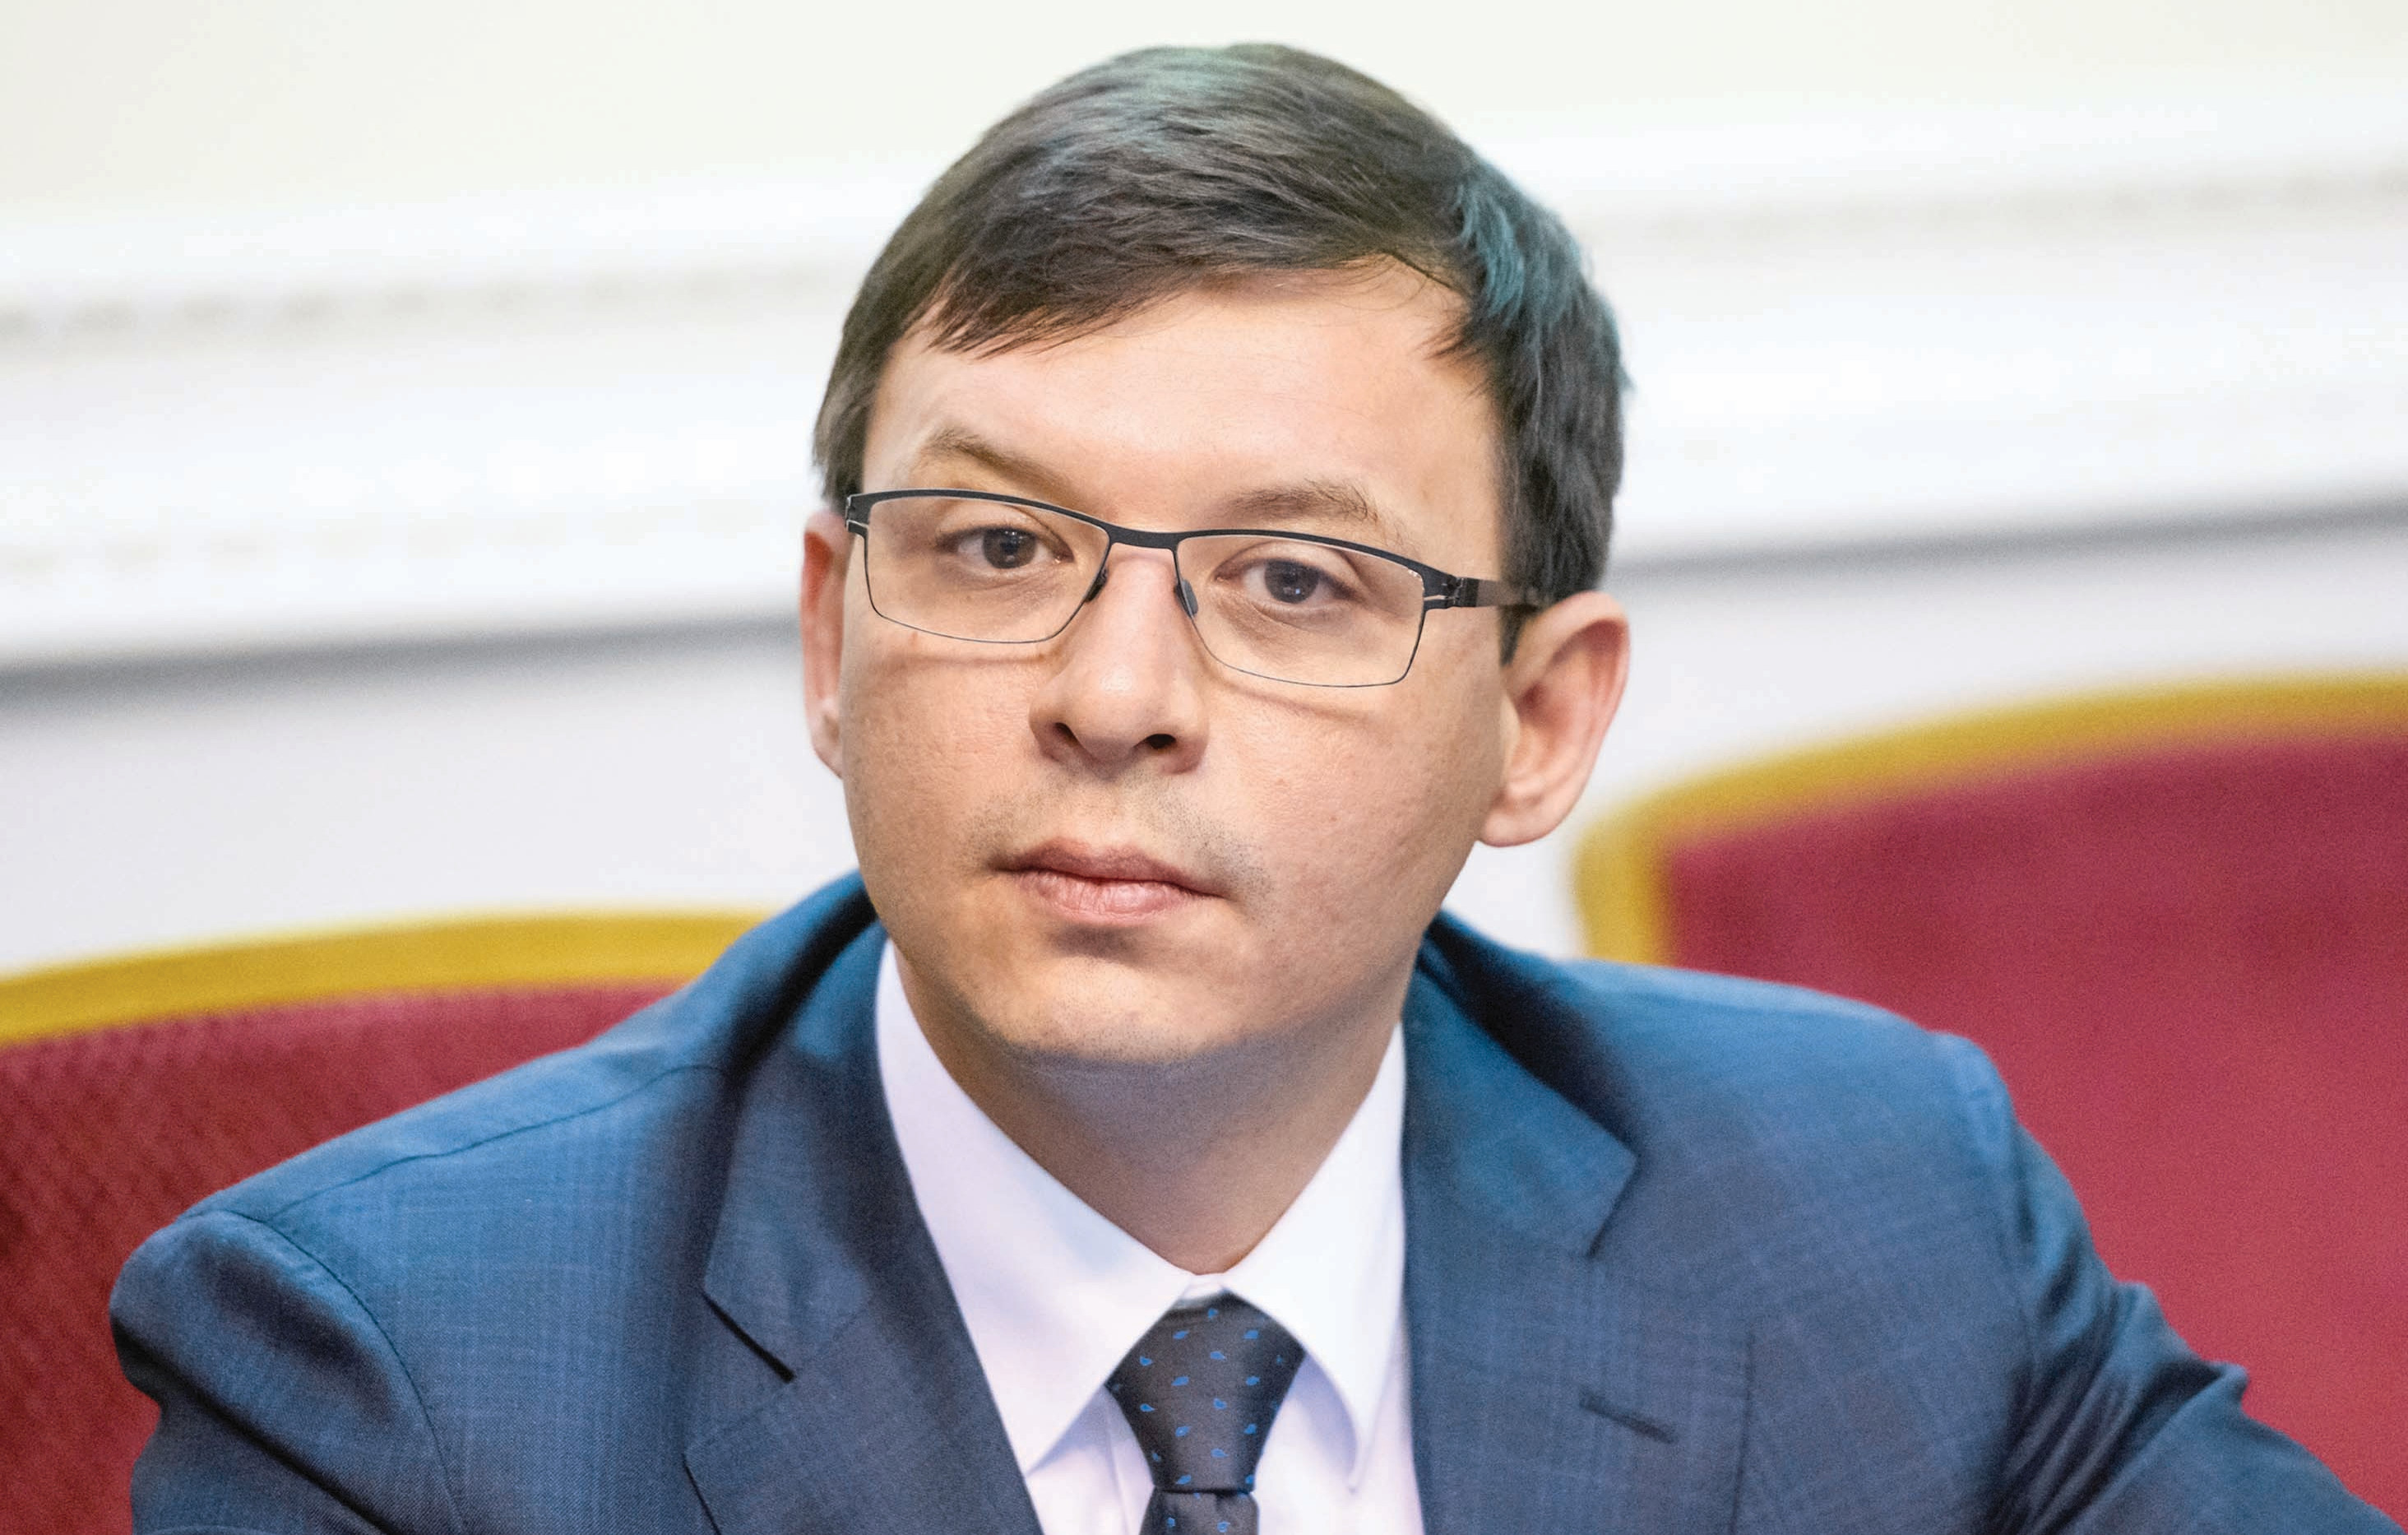 Yevhen Murayev